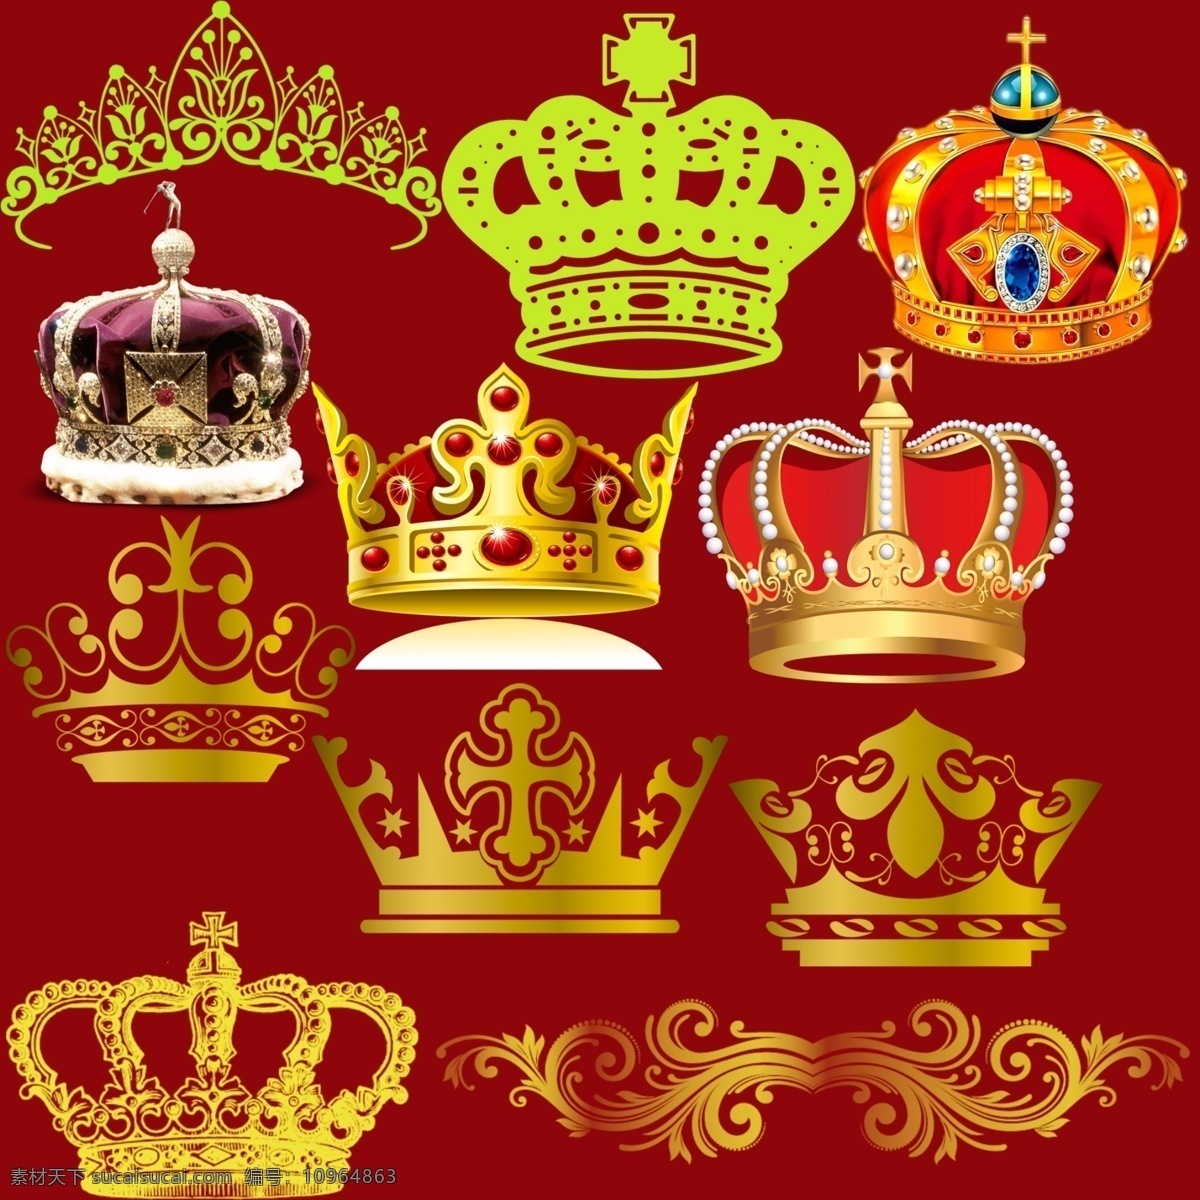 皇冠王冠 皇冠 王冠 国王帽子 王后帽子 多种王冠 花纹 纹理素材 分层 红色